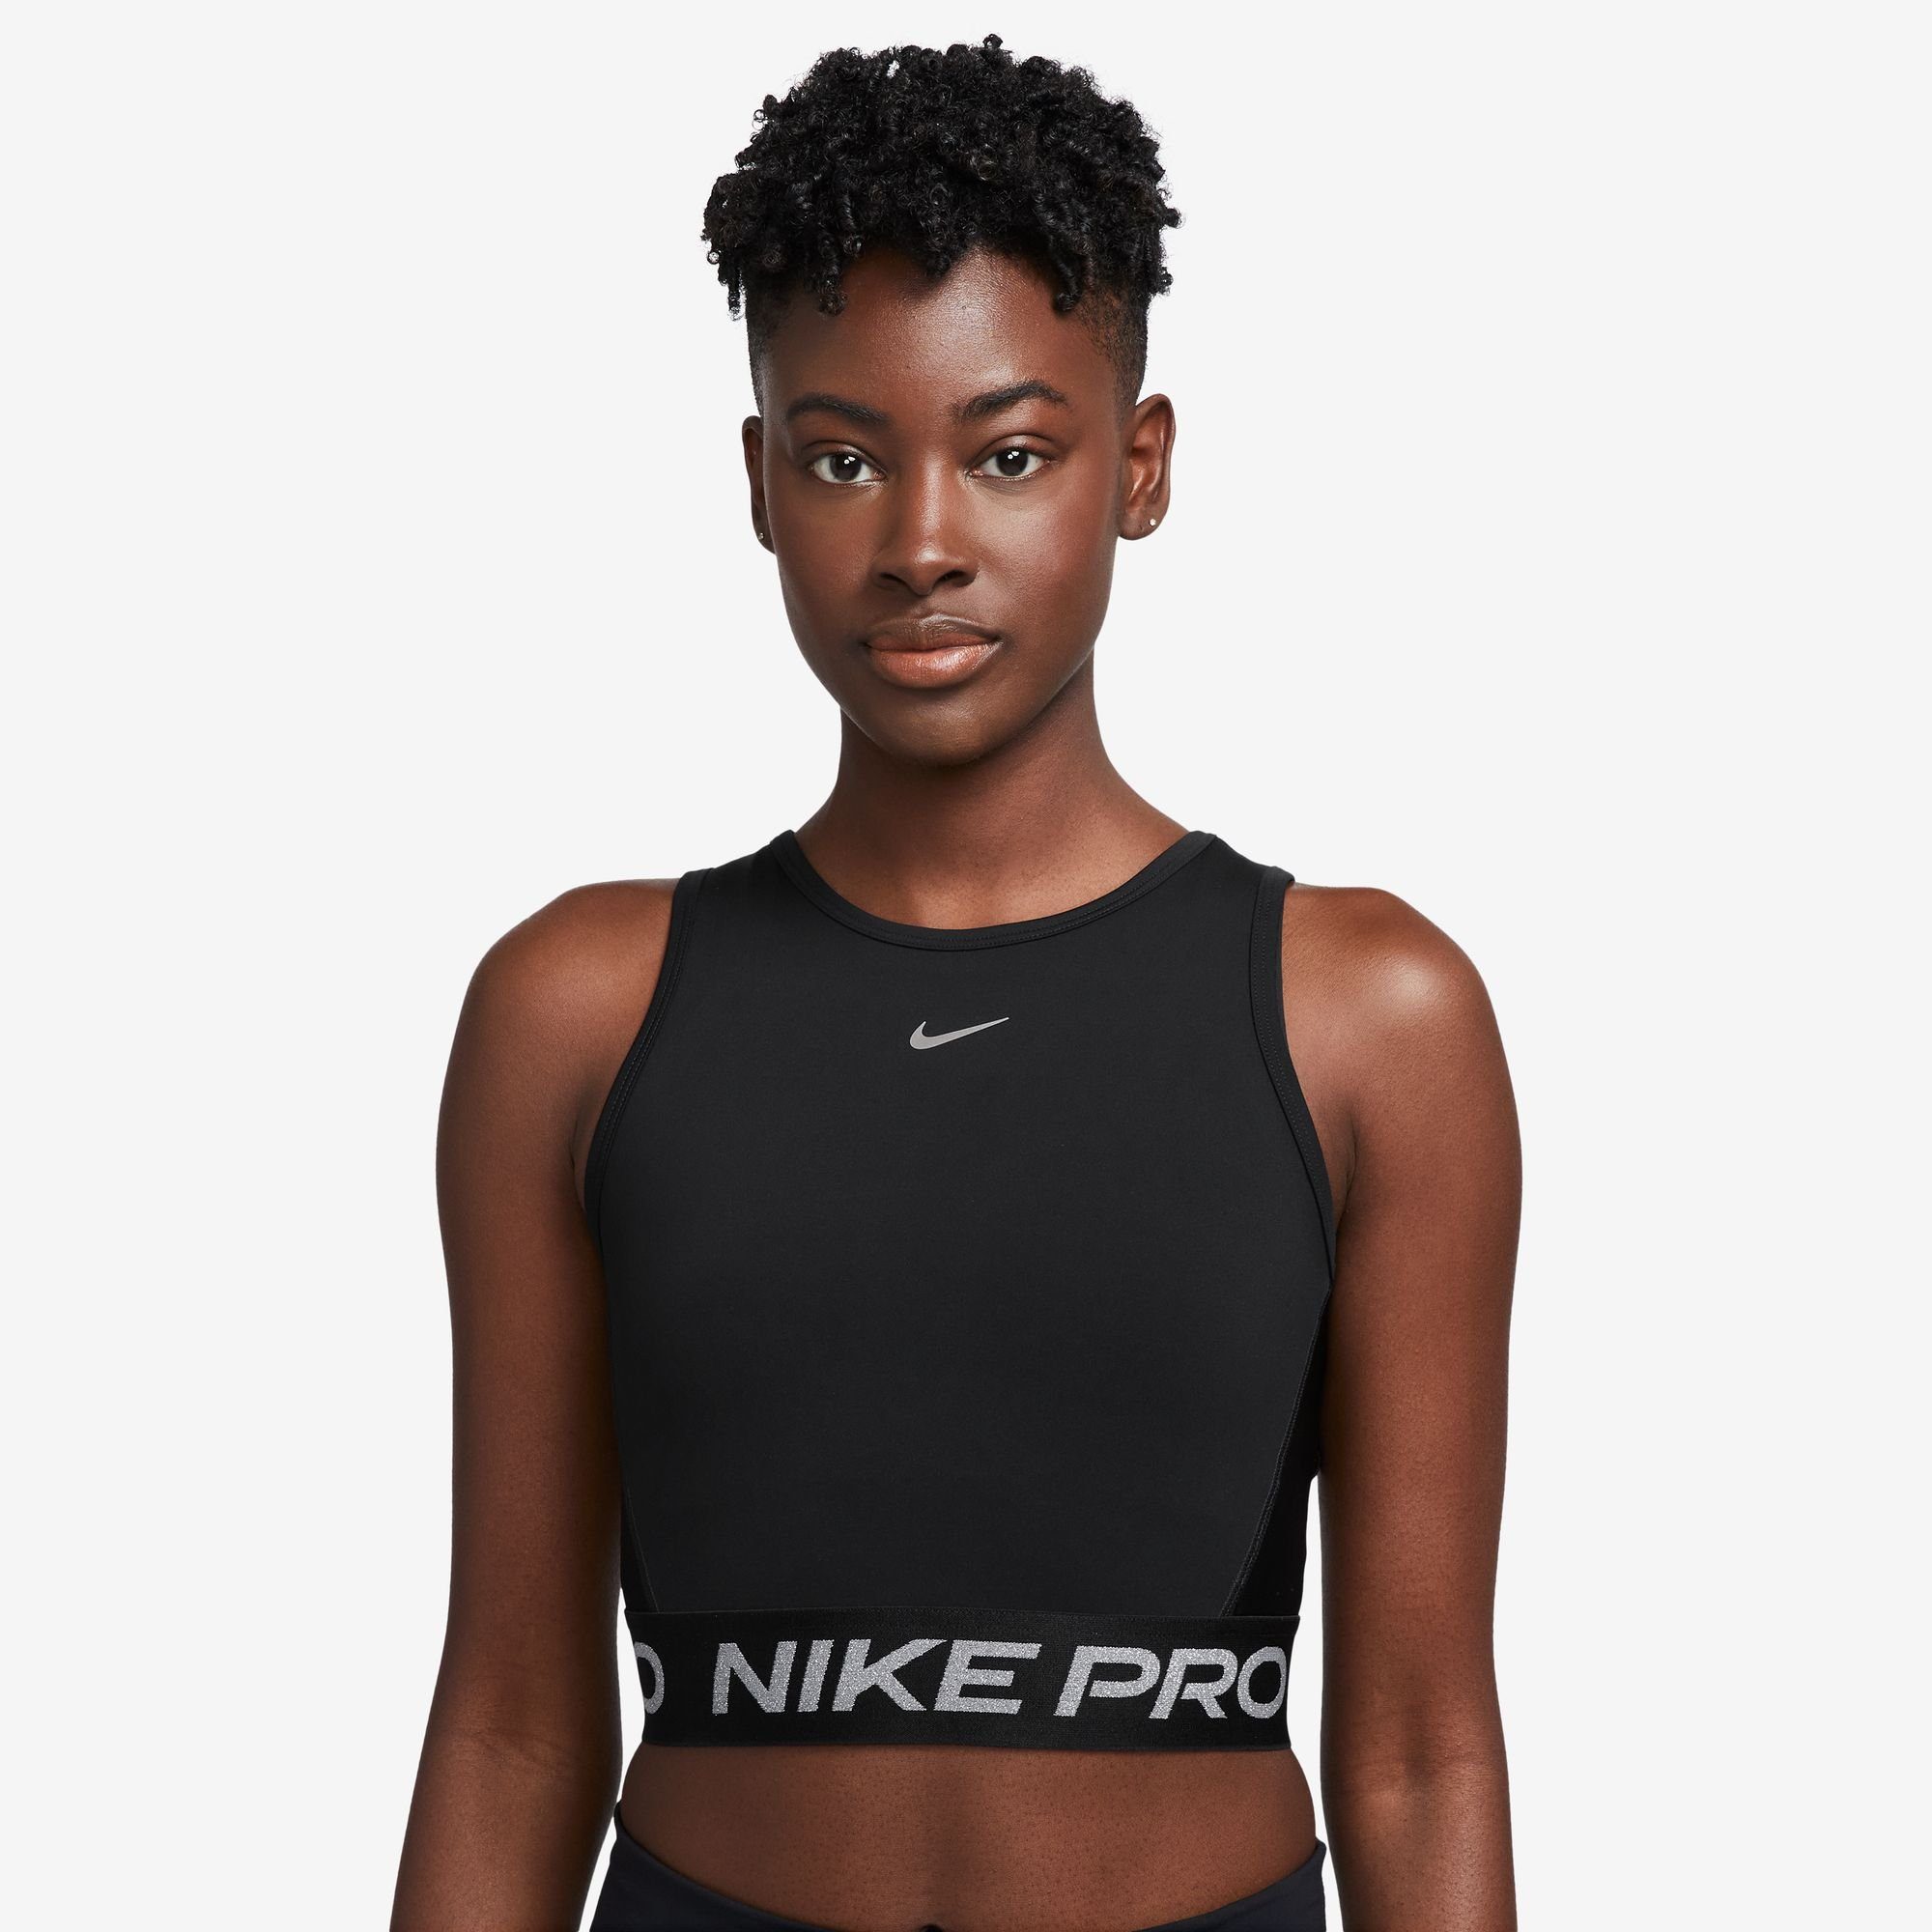 Nike Cropped Tops für Damen kaufen » Nike Croptops | OTTO | 